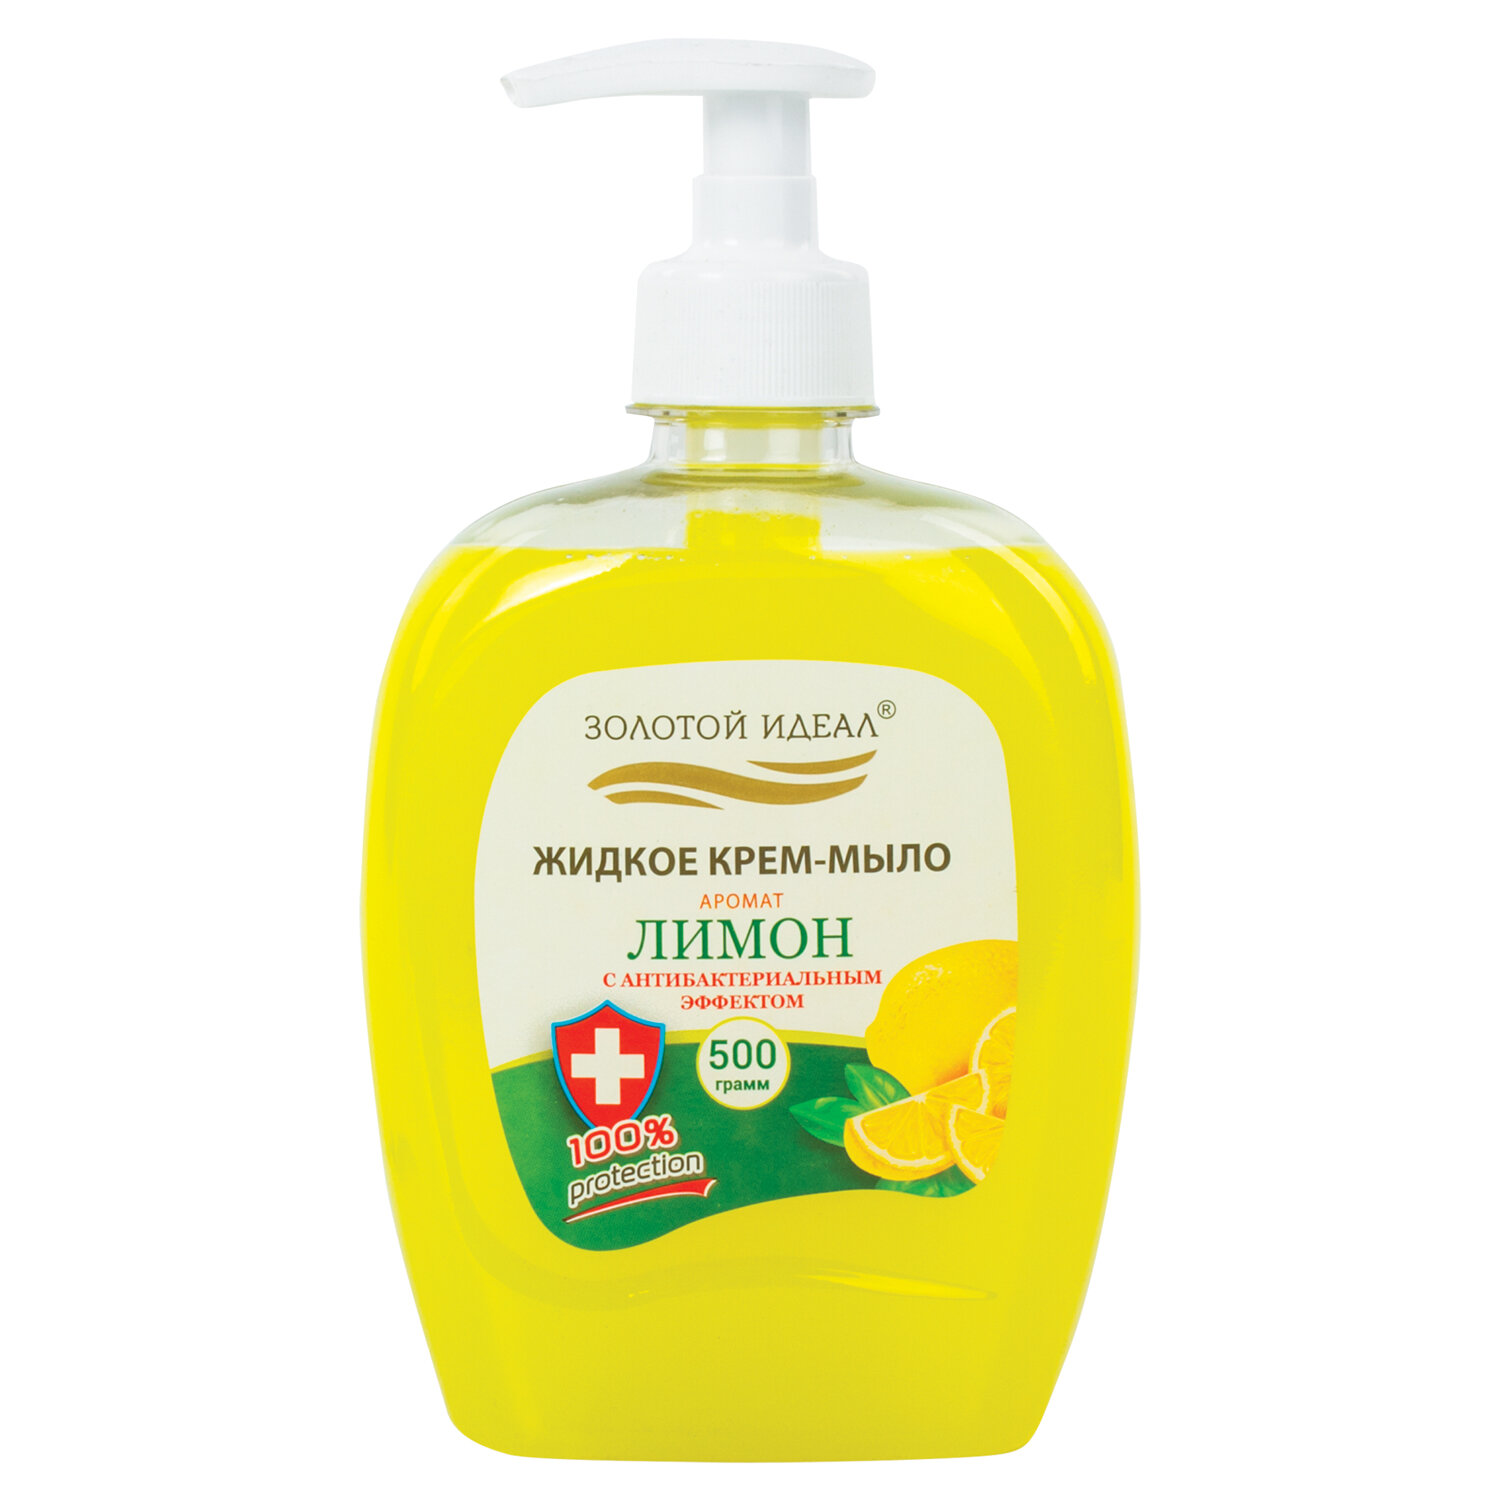 Жидкое крем-мыло Золотой идеал Лимон с антибактериальным эффектом 12 шт х 500 мл frosch жидкое средство для стирки лимон 2000